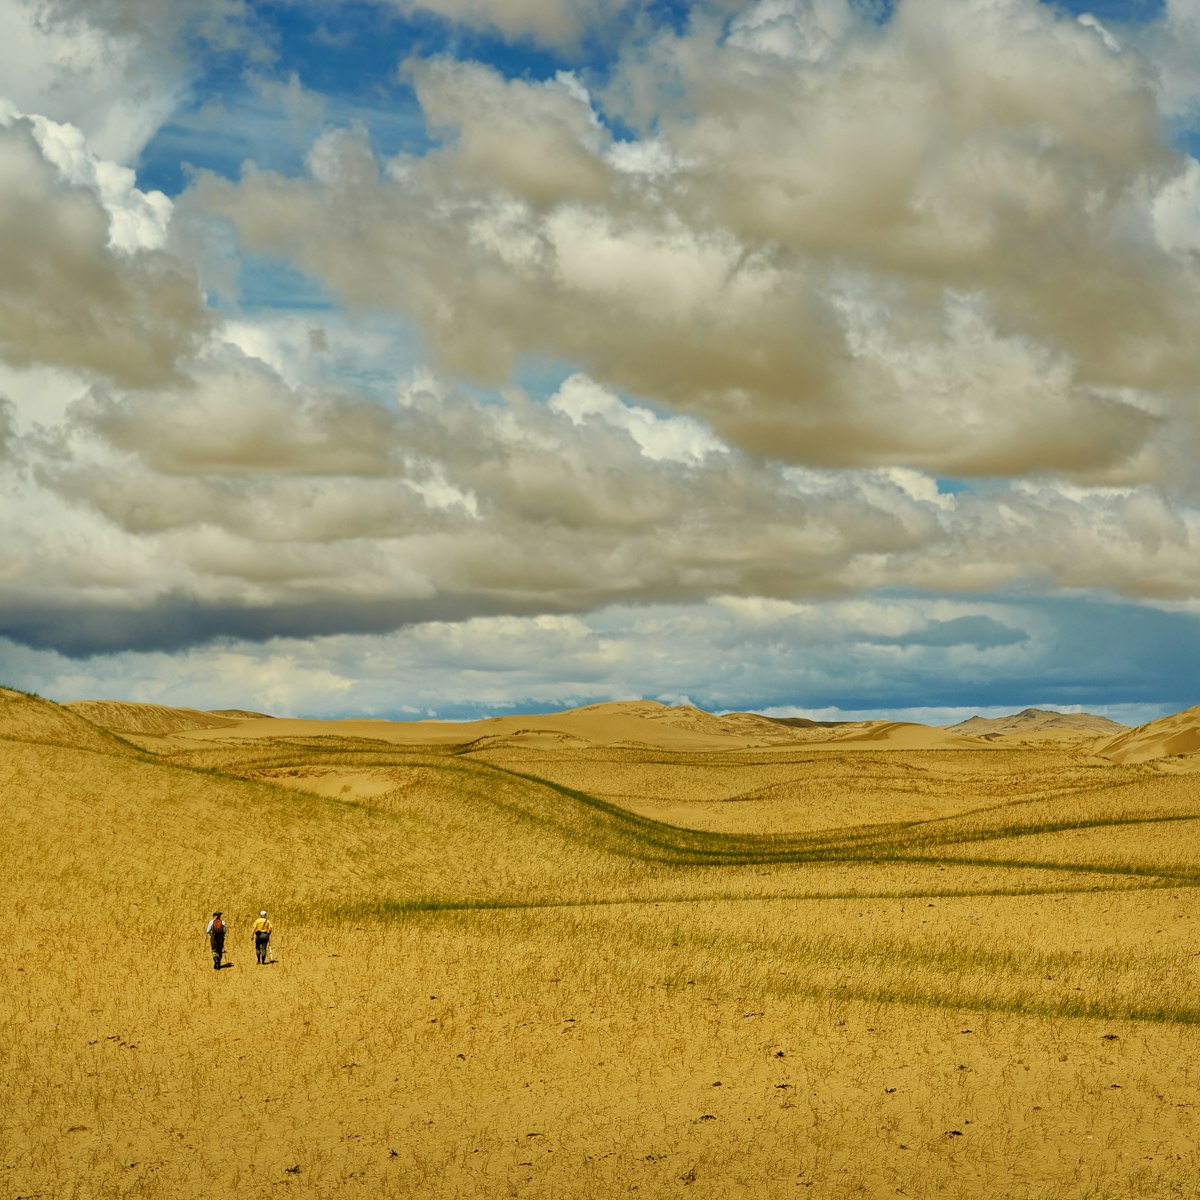 Mongolia. Sands Mongol Els, sandy dune desert, bright sunny day
1427612316